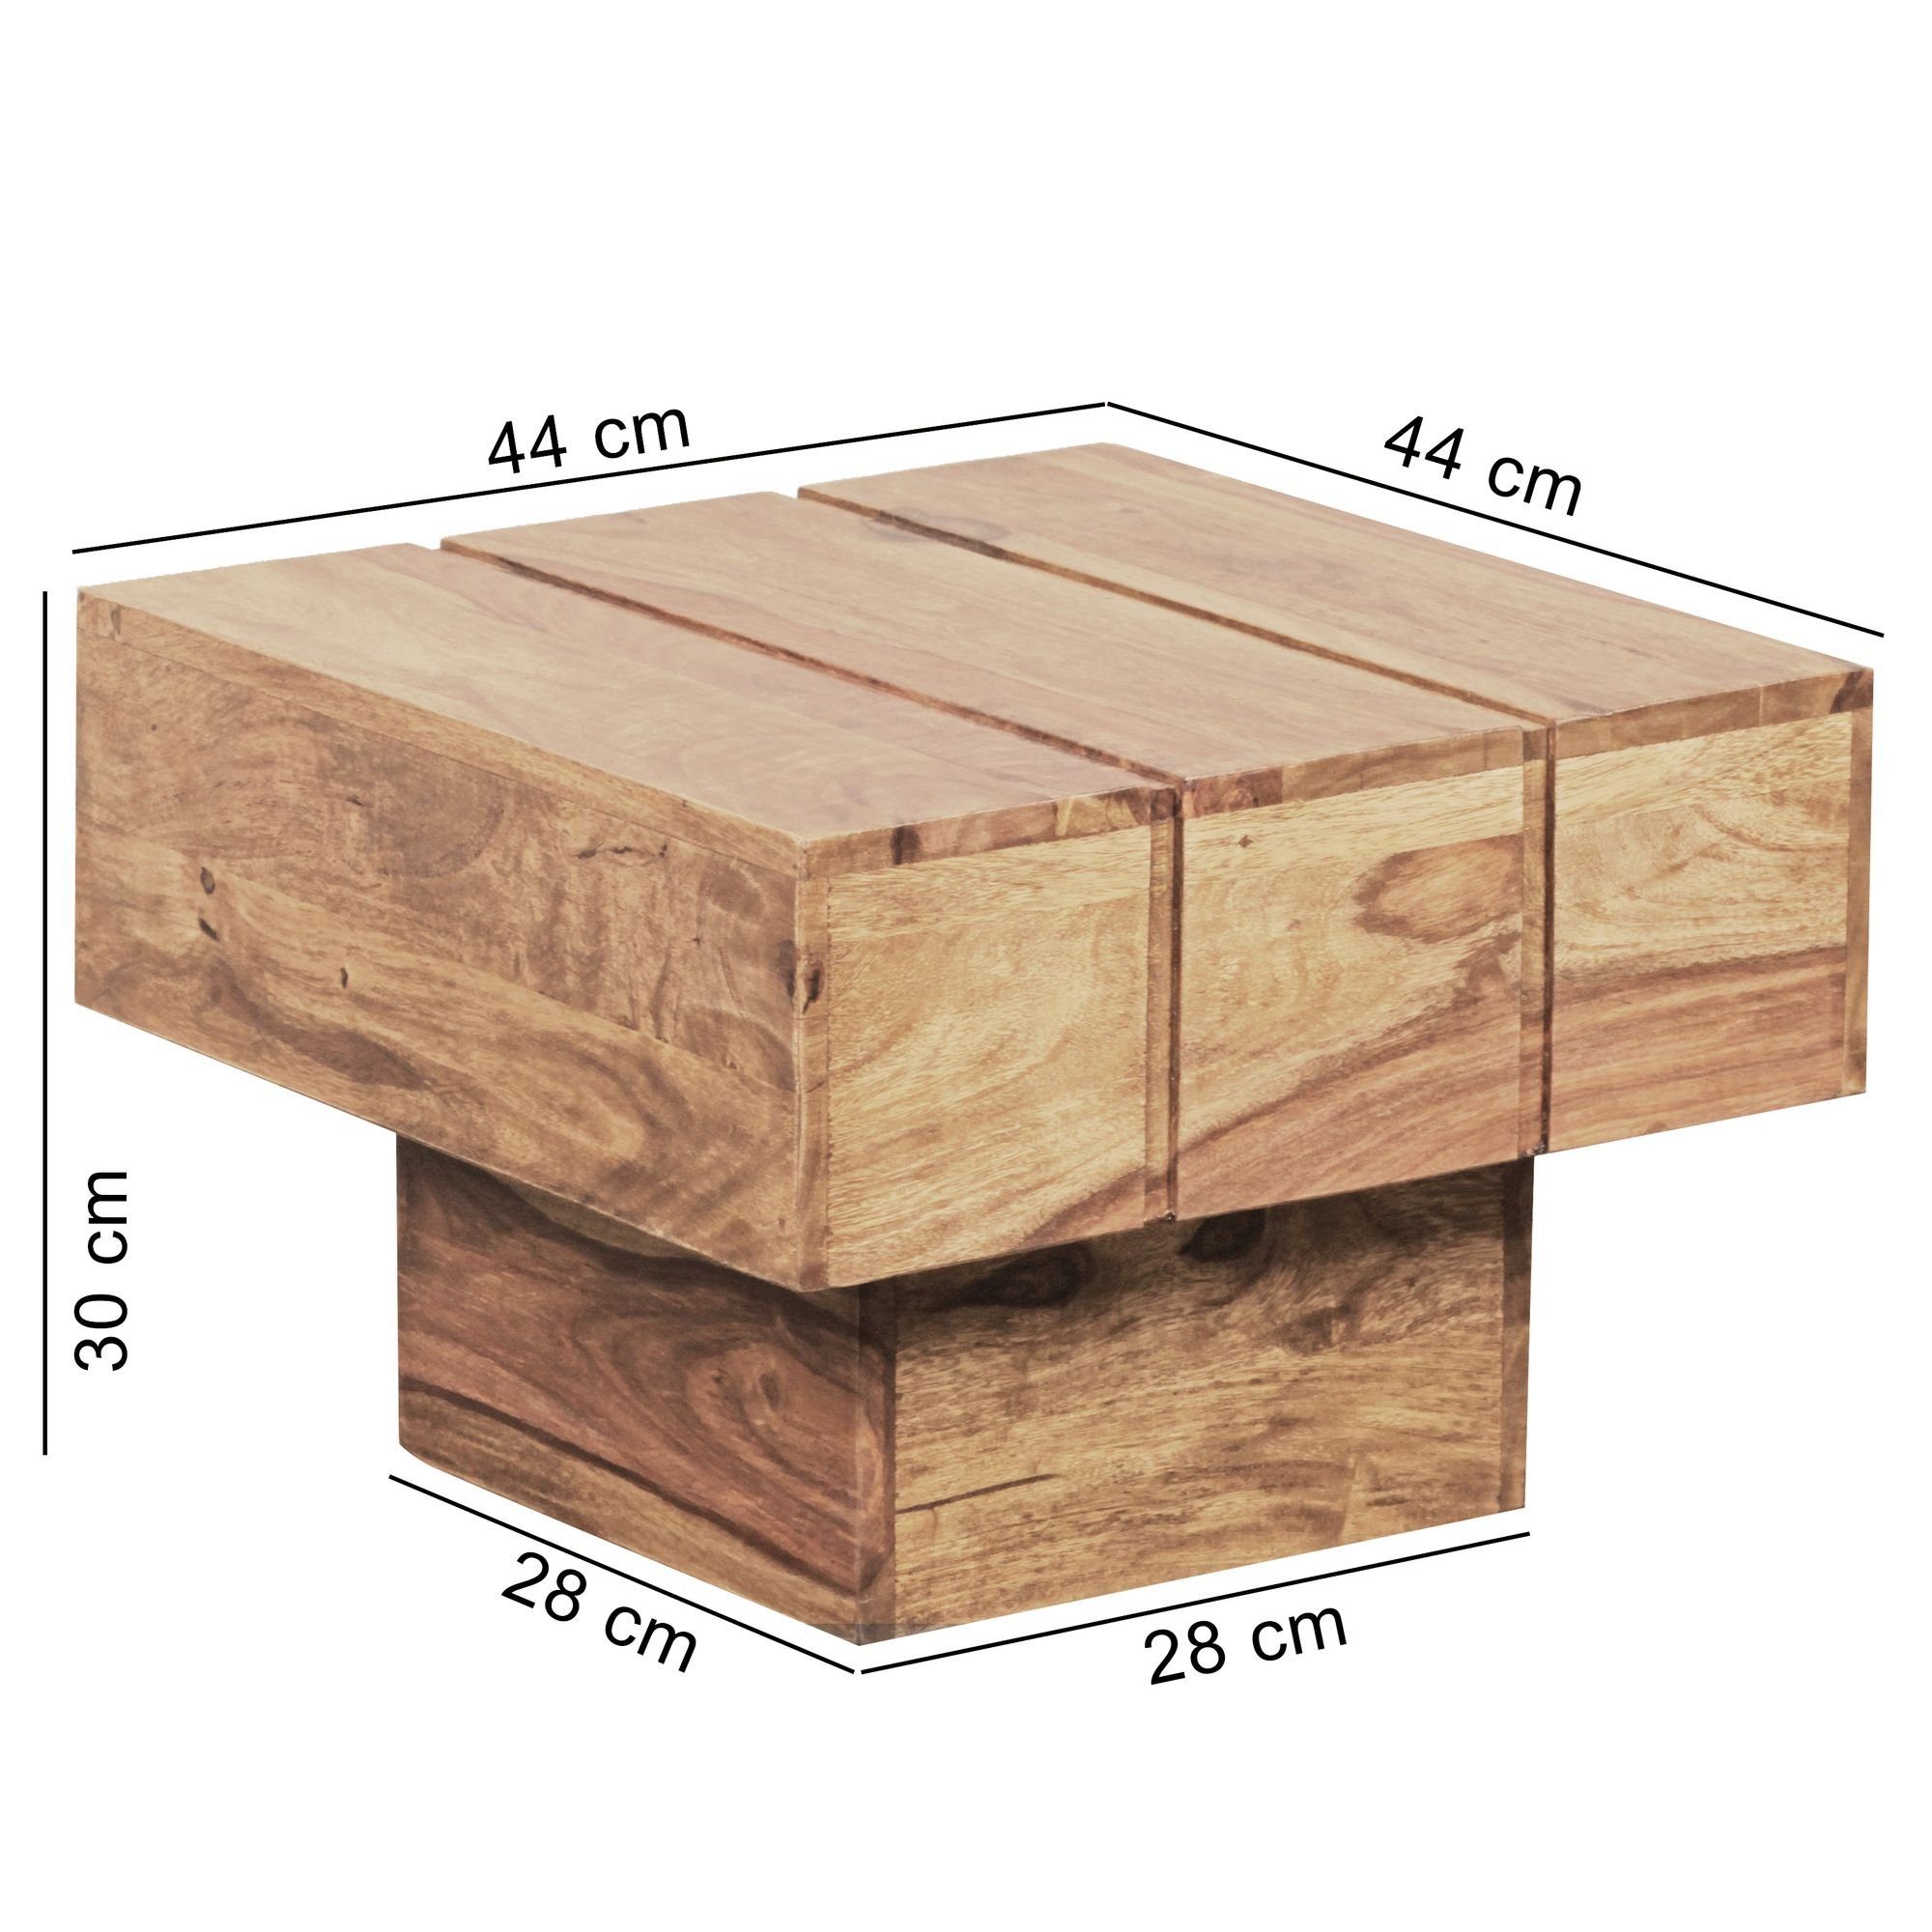 möbelando Beistelltisch Beistelltisch LUCCA Cube Massiv Akazie Massivholz x x 44 30 44 Wohnzimmerti, Beistelltisch LUCCA Akazie Couchtisch Wohnzimmertisch quadratisch Landhaus cm Massivholz